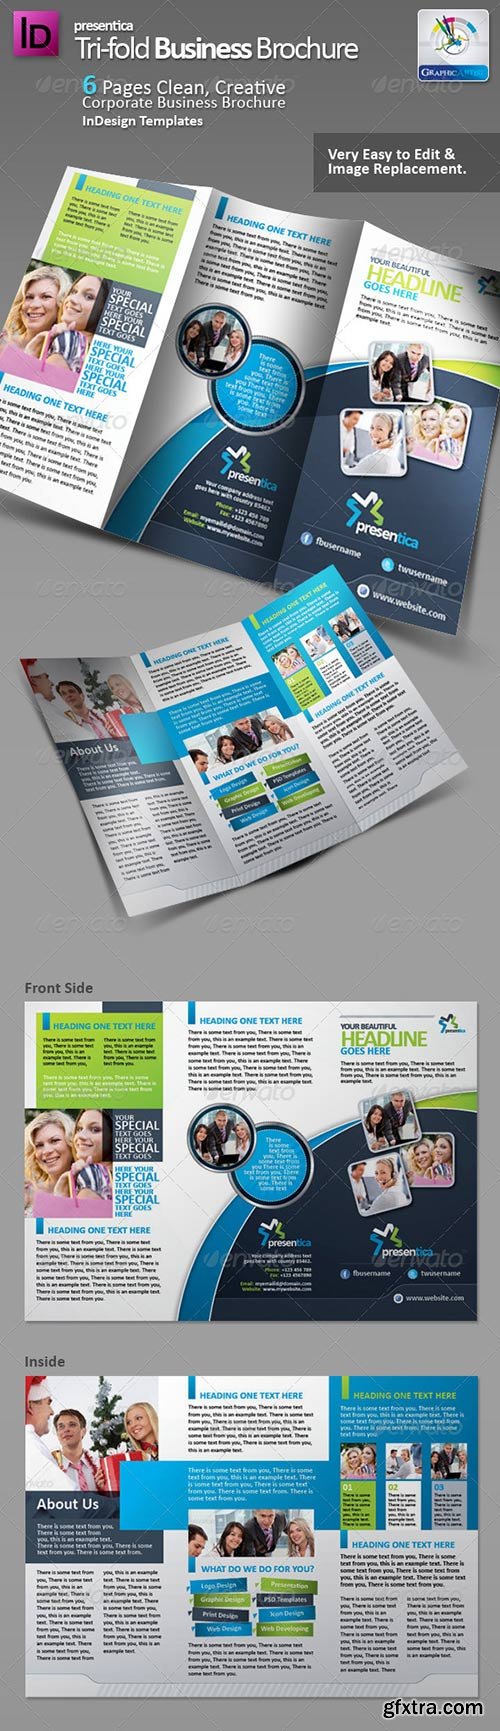 Graphicriver - Presentica Tri-fold Corporate Brochure 2942163